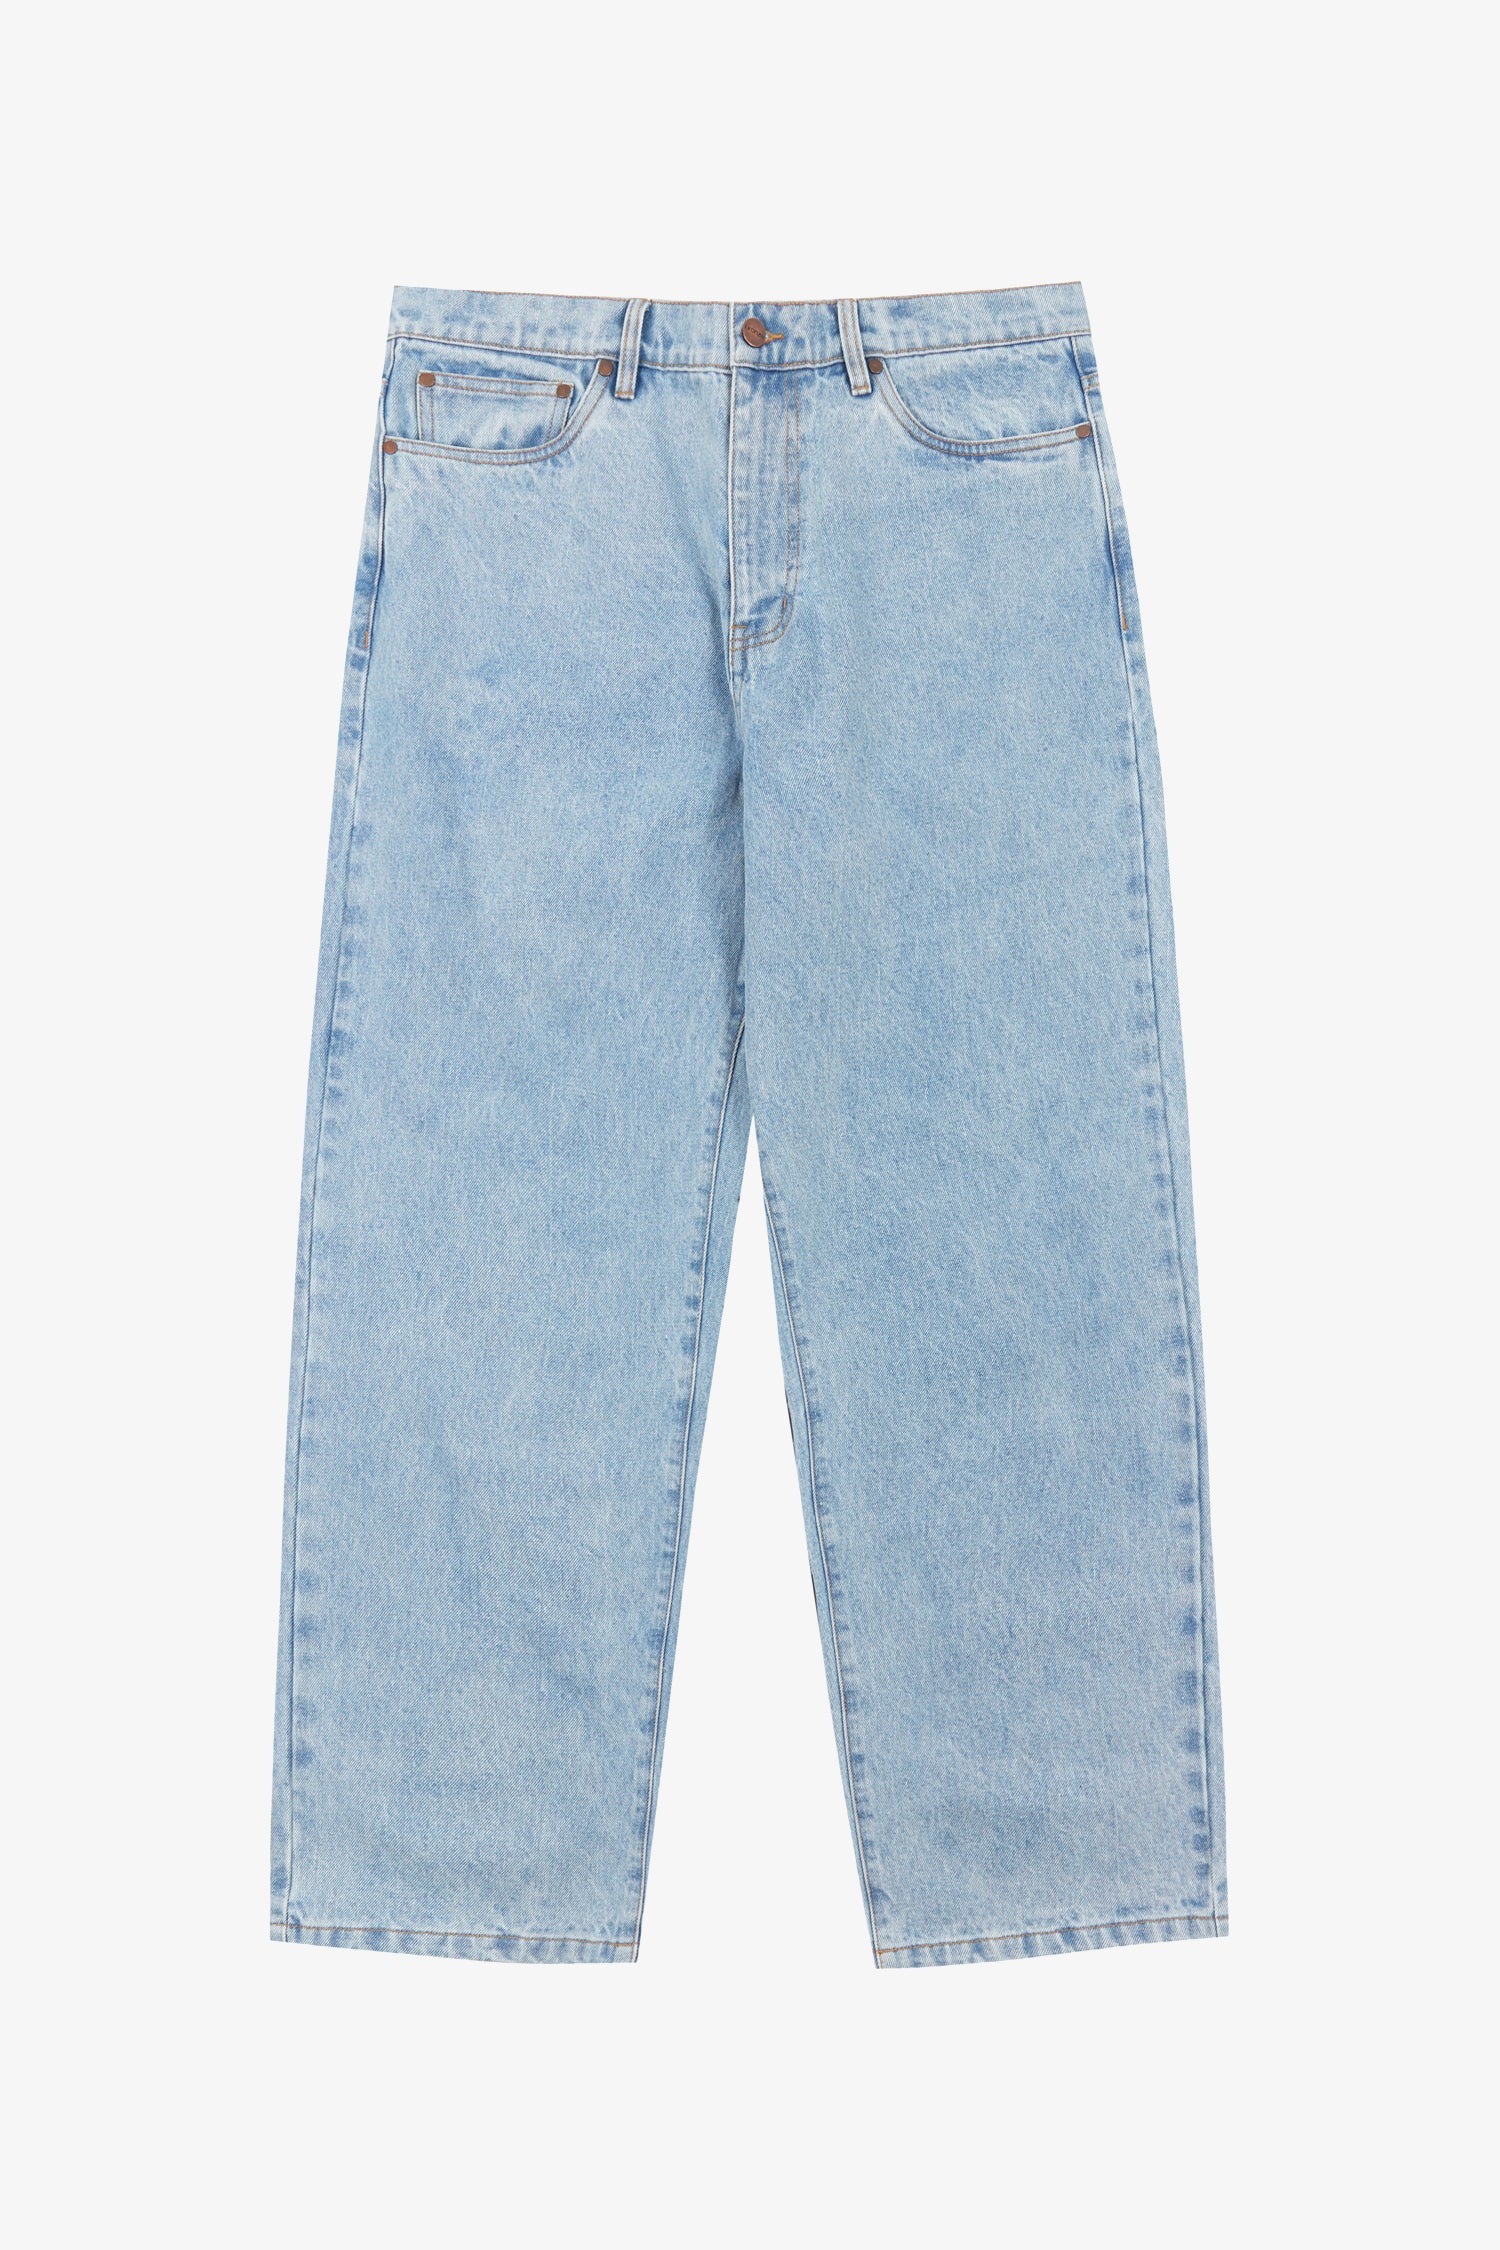 56 Denim Jeans- Selectshop FRAME